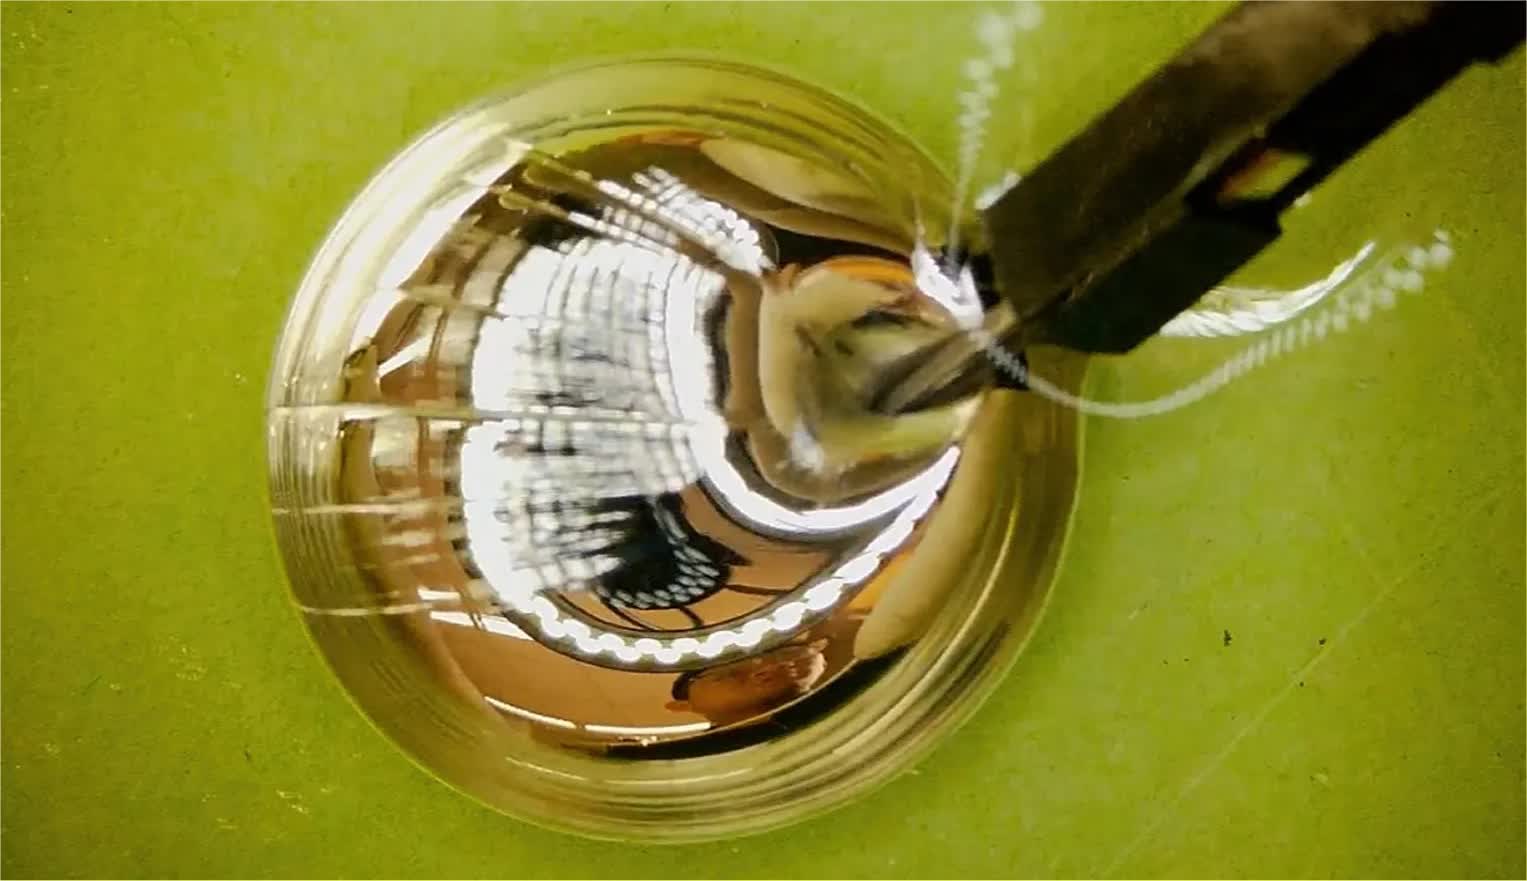 percée métal liquide nous rapproche l’électronique flexible implantable